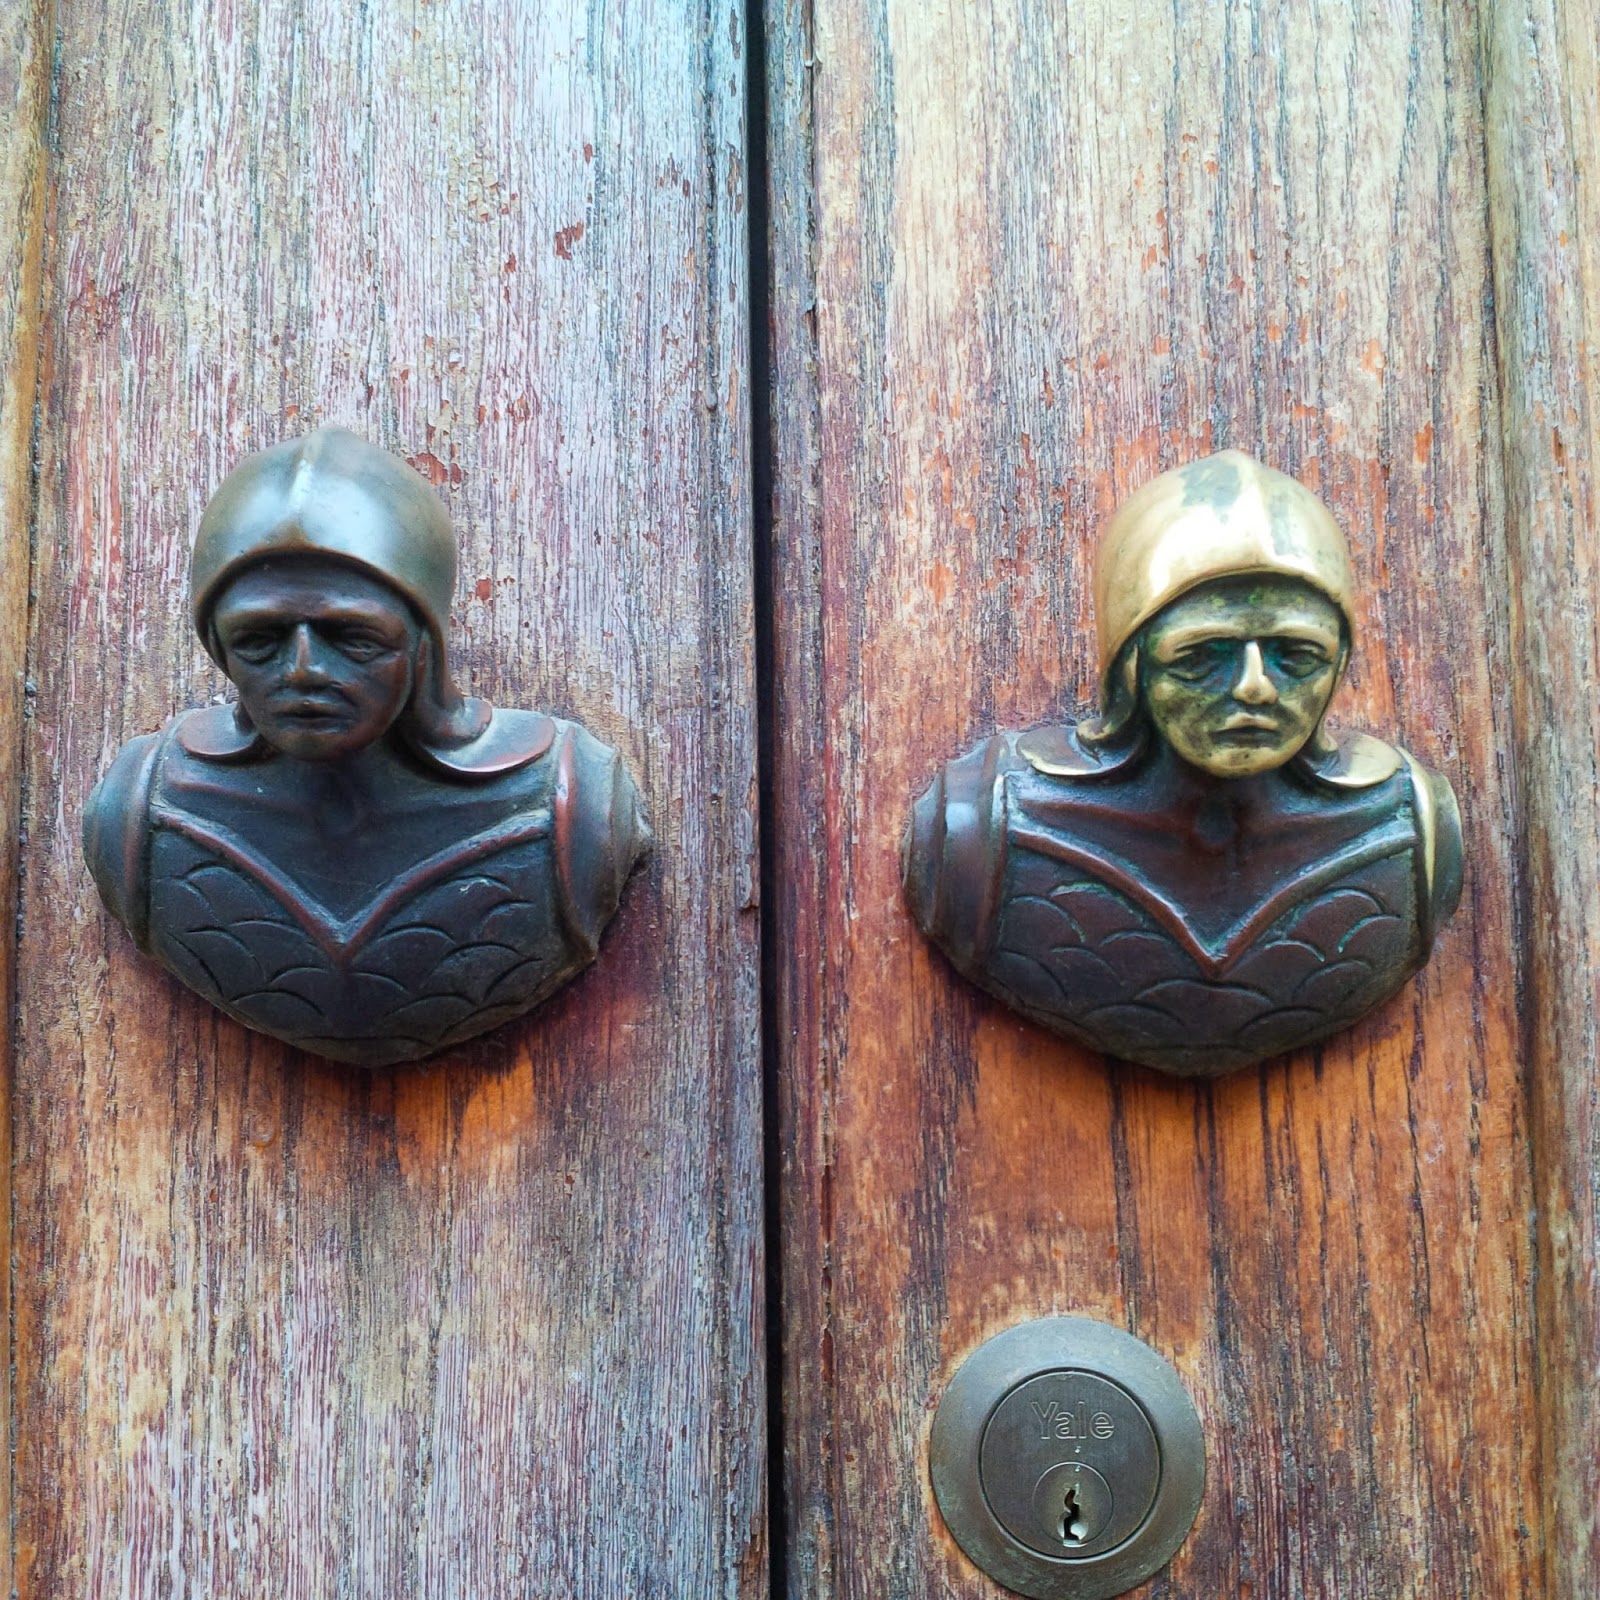 Soldiers' heads door handles as seen in Vicenza, Italy